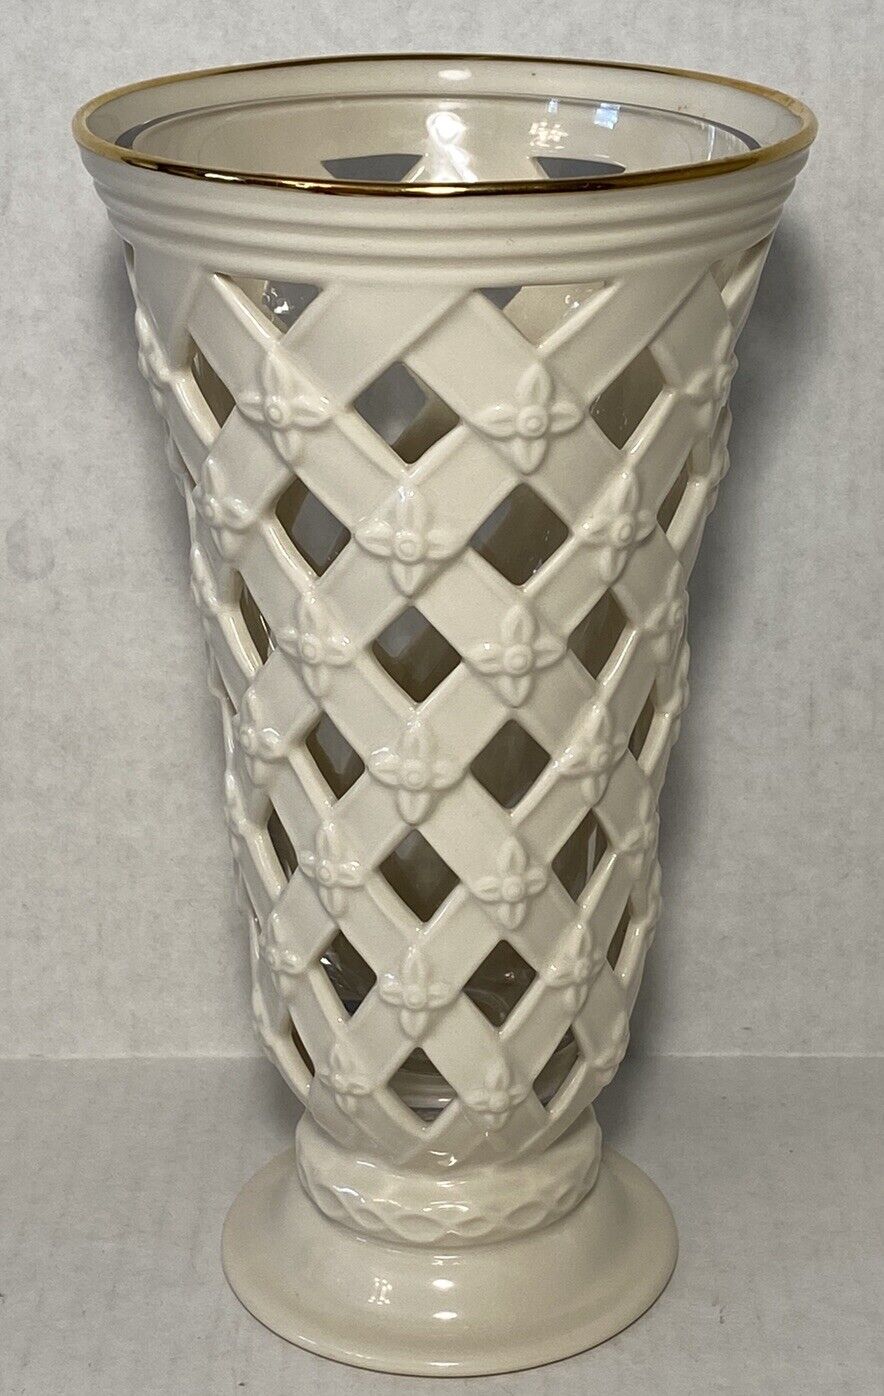 Lenox Pierced Lattice Vase With Glass Insert Cream Color Gold Rim Classic